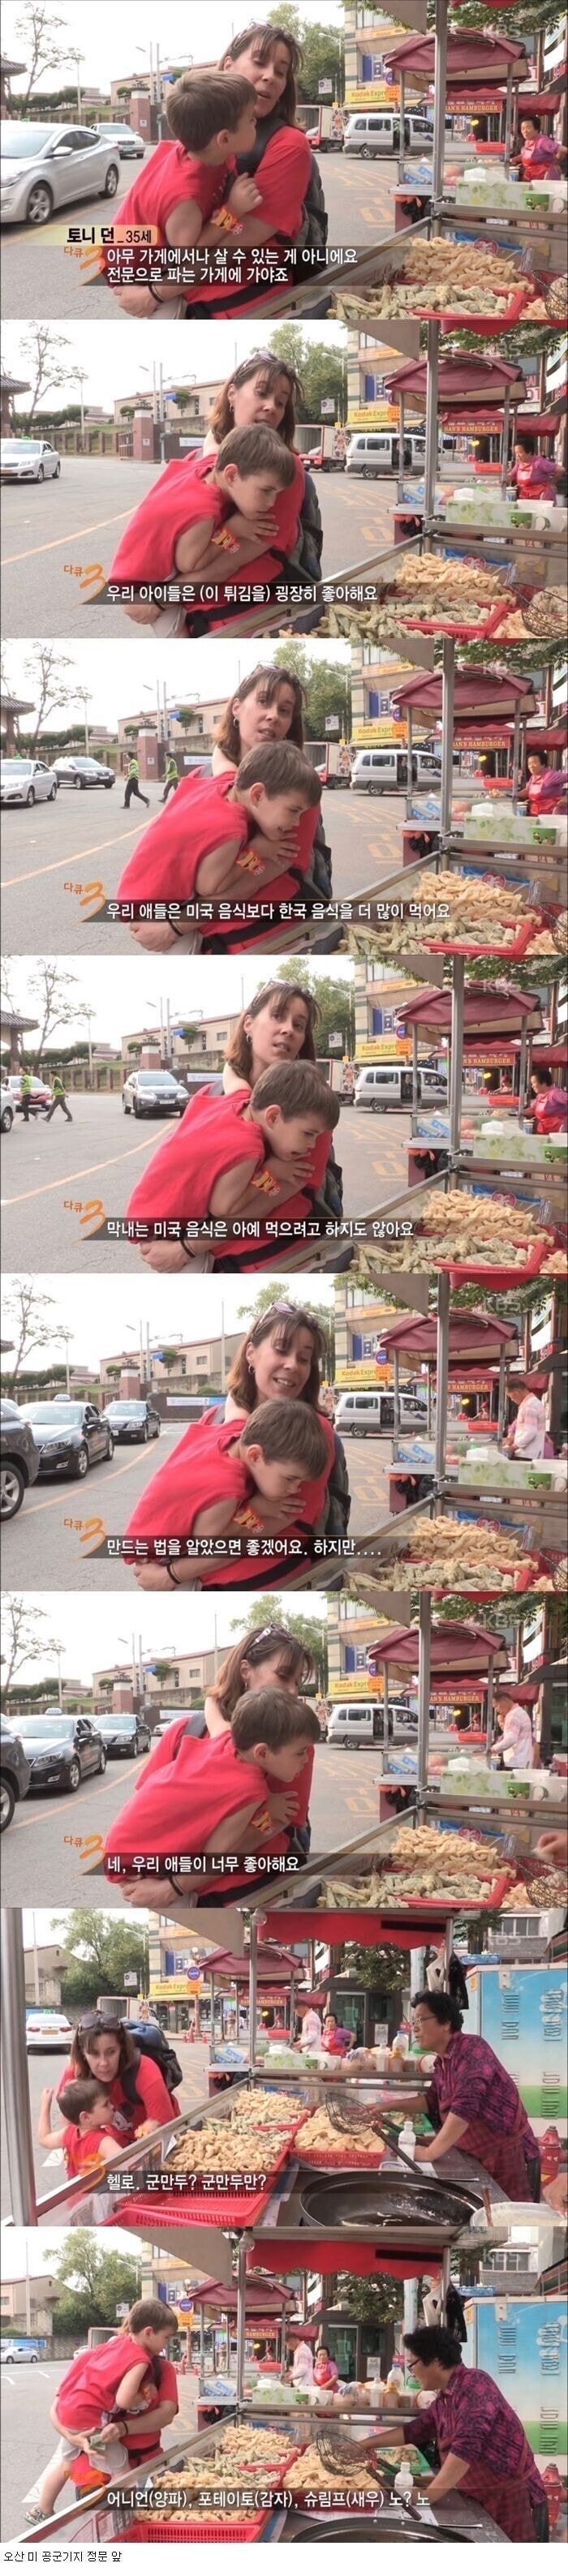 182df29793e555d1f.jpeg.jpg 애들이 미국 음식 보다 한국 음식을 더 좋아해서 걱정인 어머니.